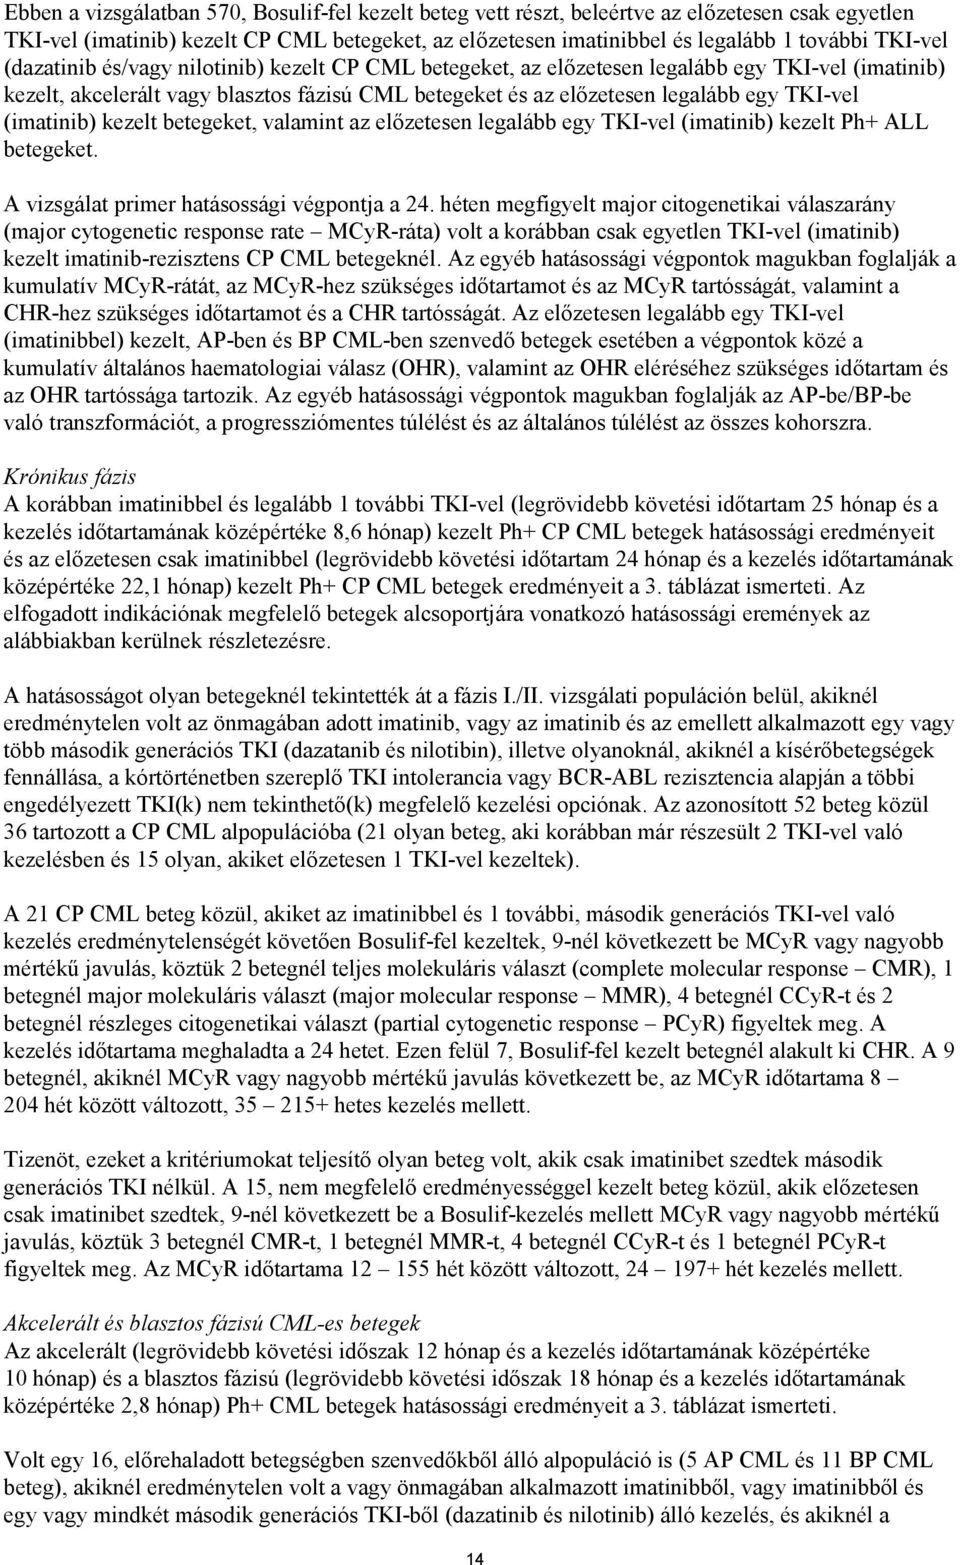 TKI-vel (imatinib) kezelt betegeket, valamint az előzetesen legalább egy TKI-vel (imatinib) kezelt Ph+ ALL betegeket. A vizsgálat primer hatásossági végpontja a 24.